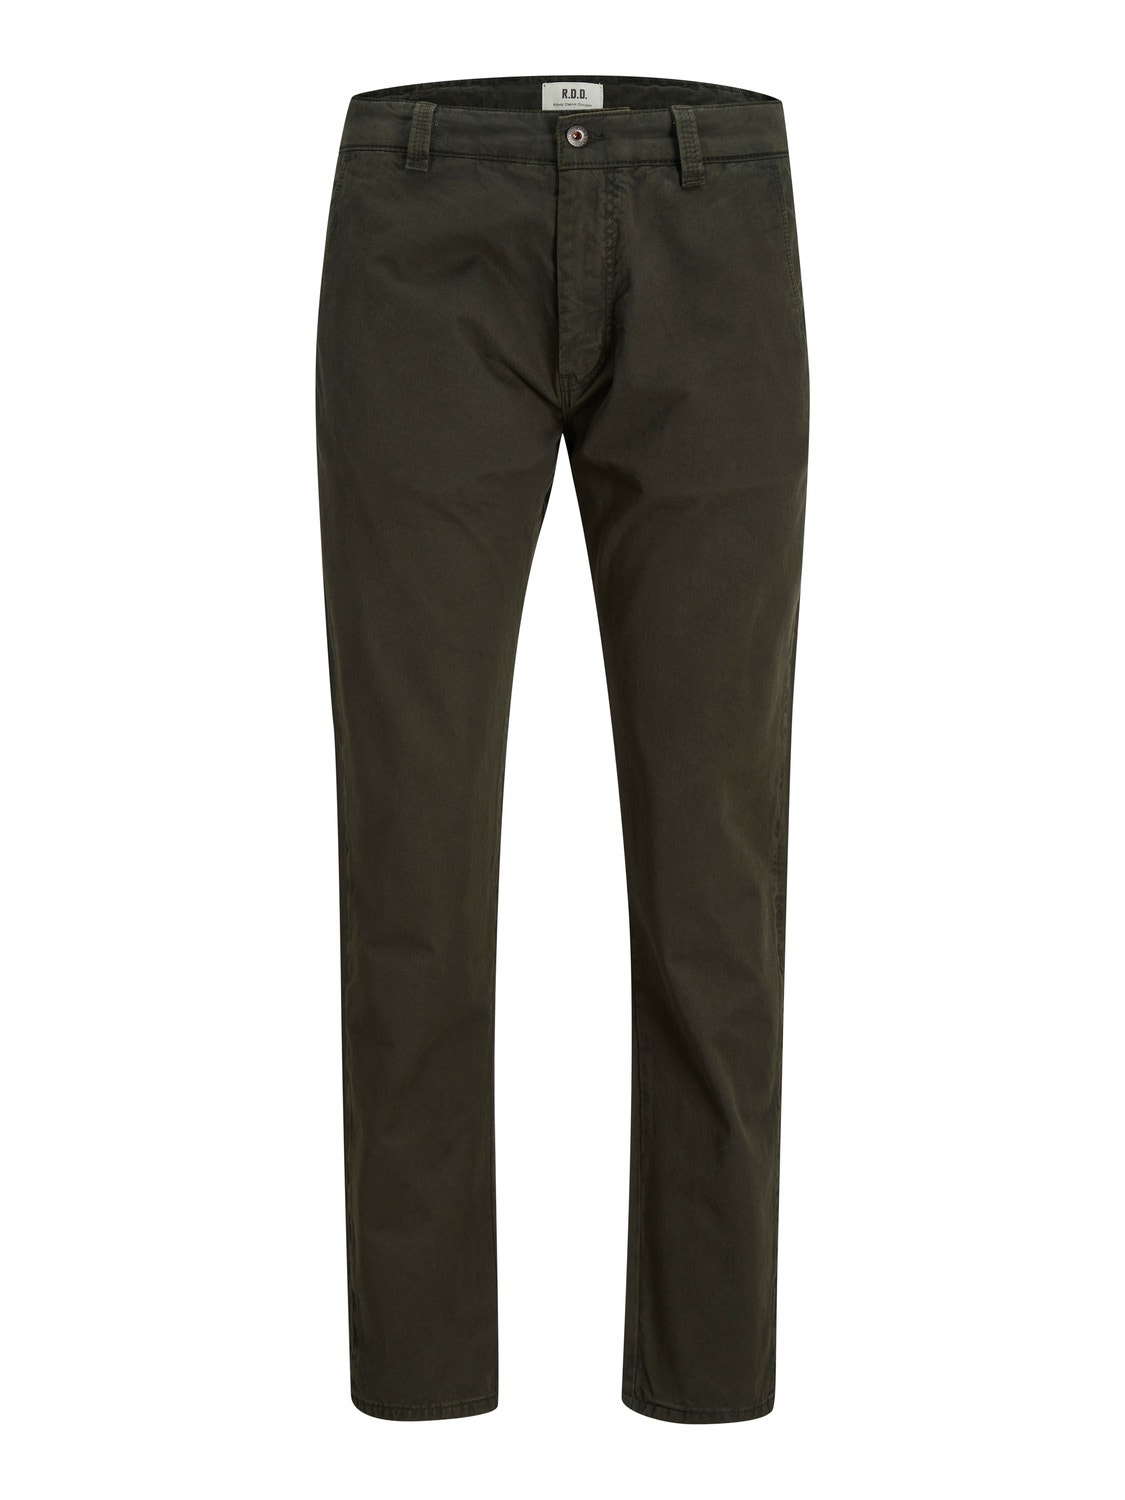 Jack & Jones RDD Regular Fit Spodnie chino -Peat - 12218422